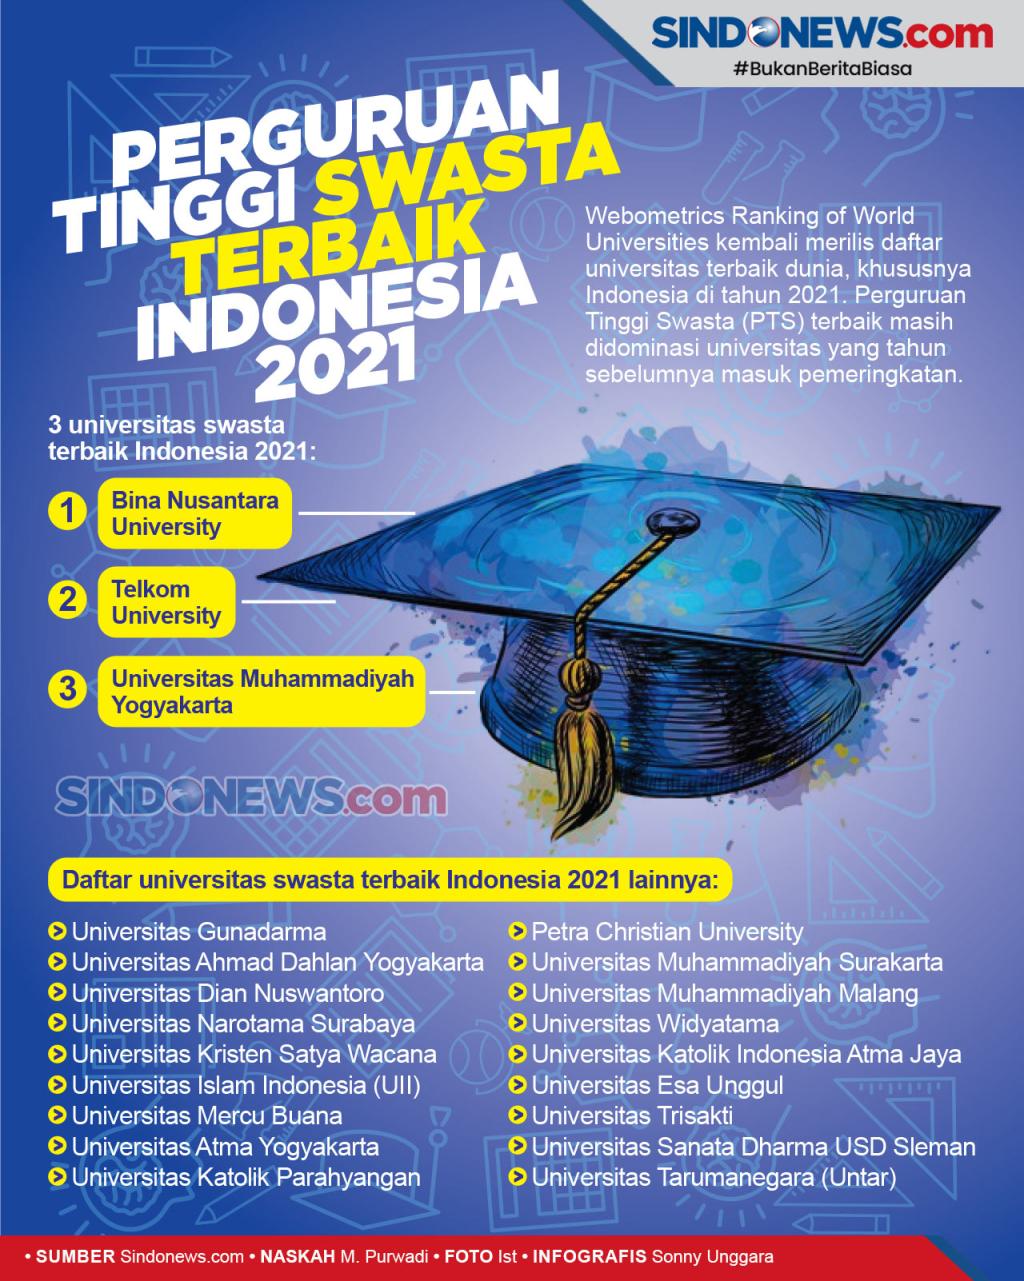 Pts terbaik di indonesia tahun 2021